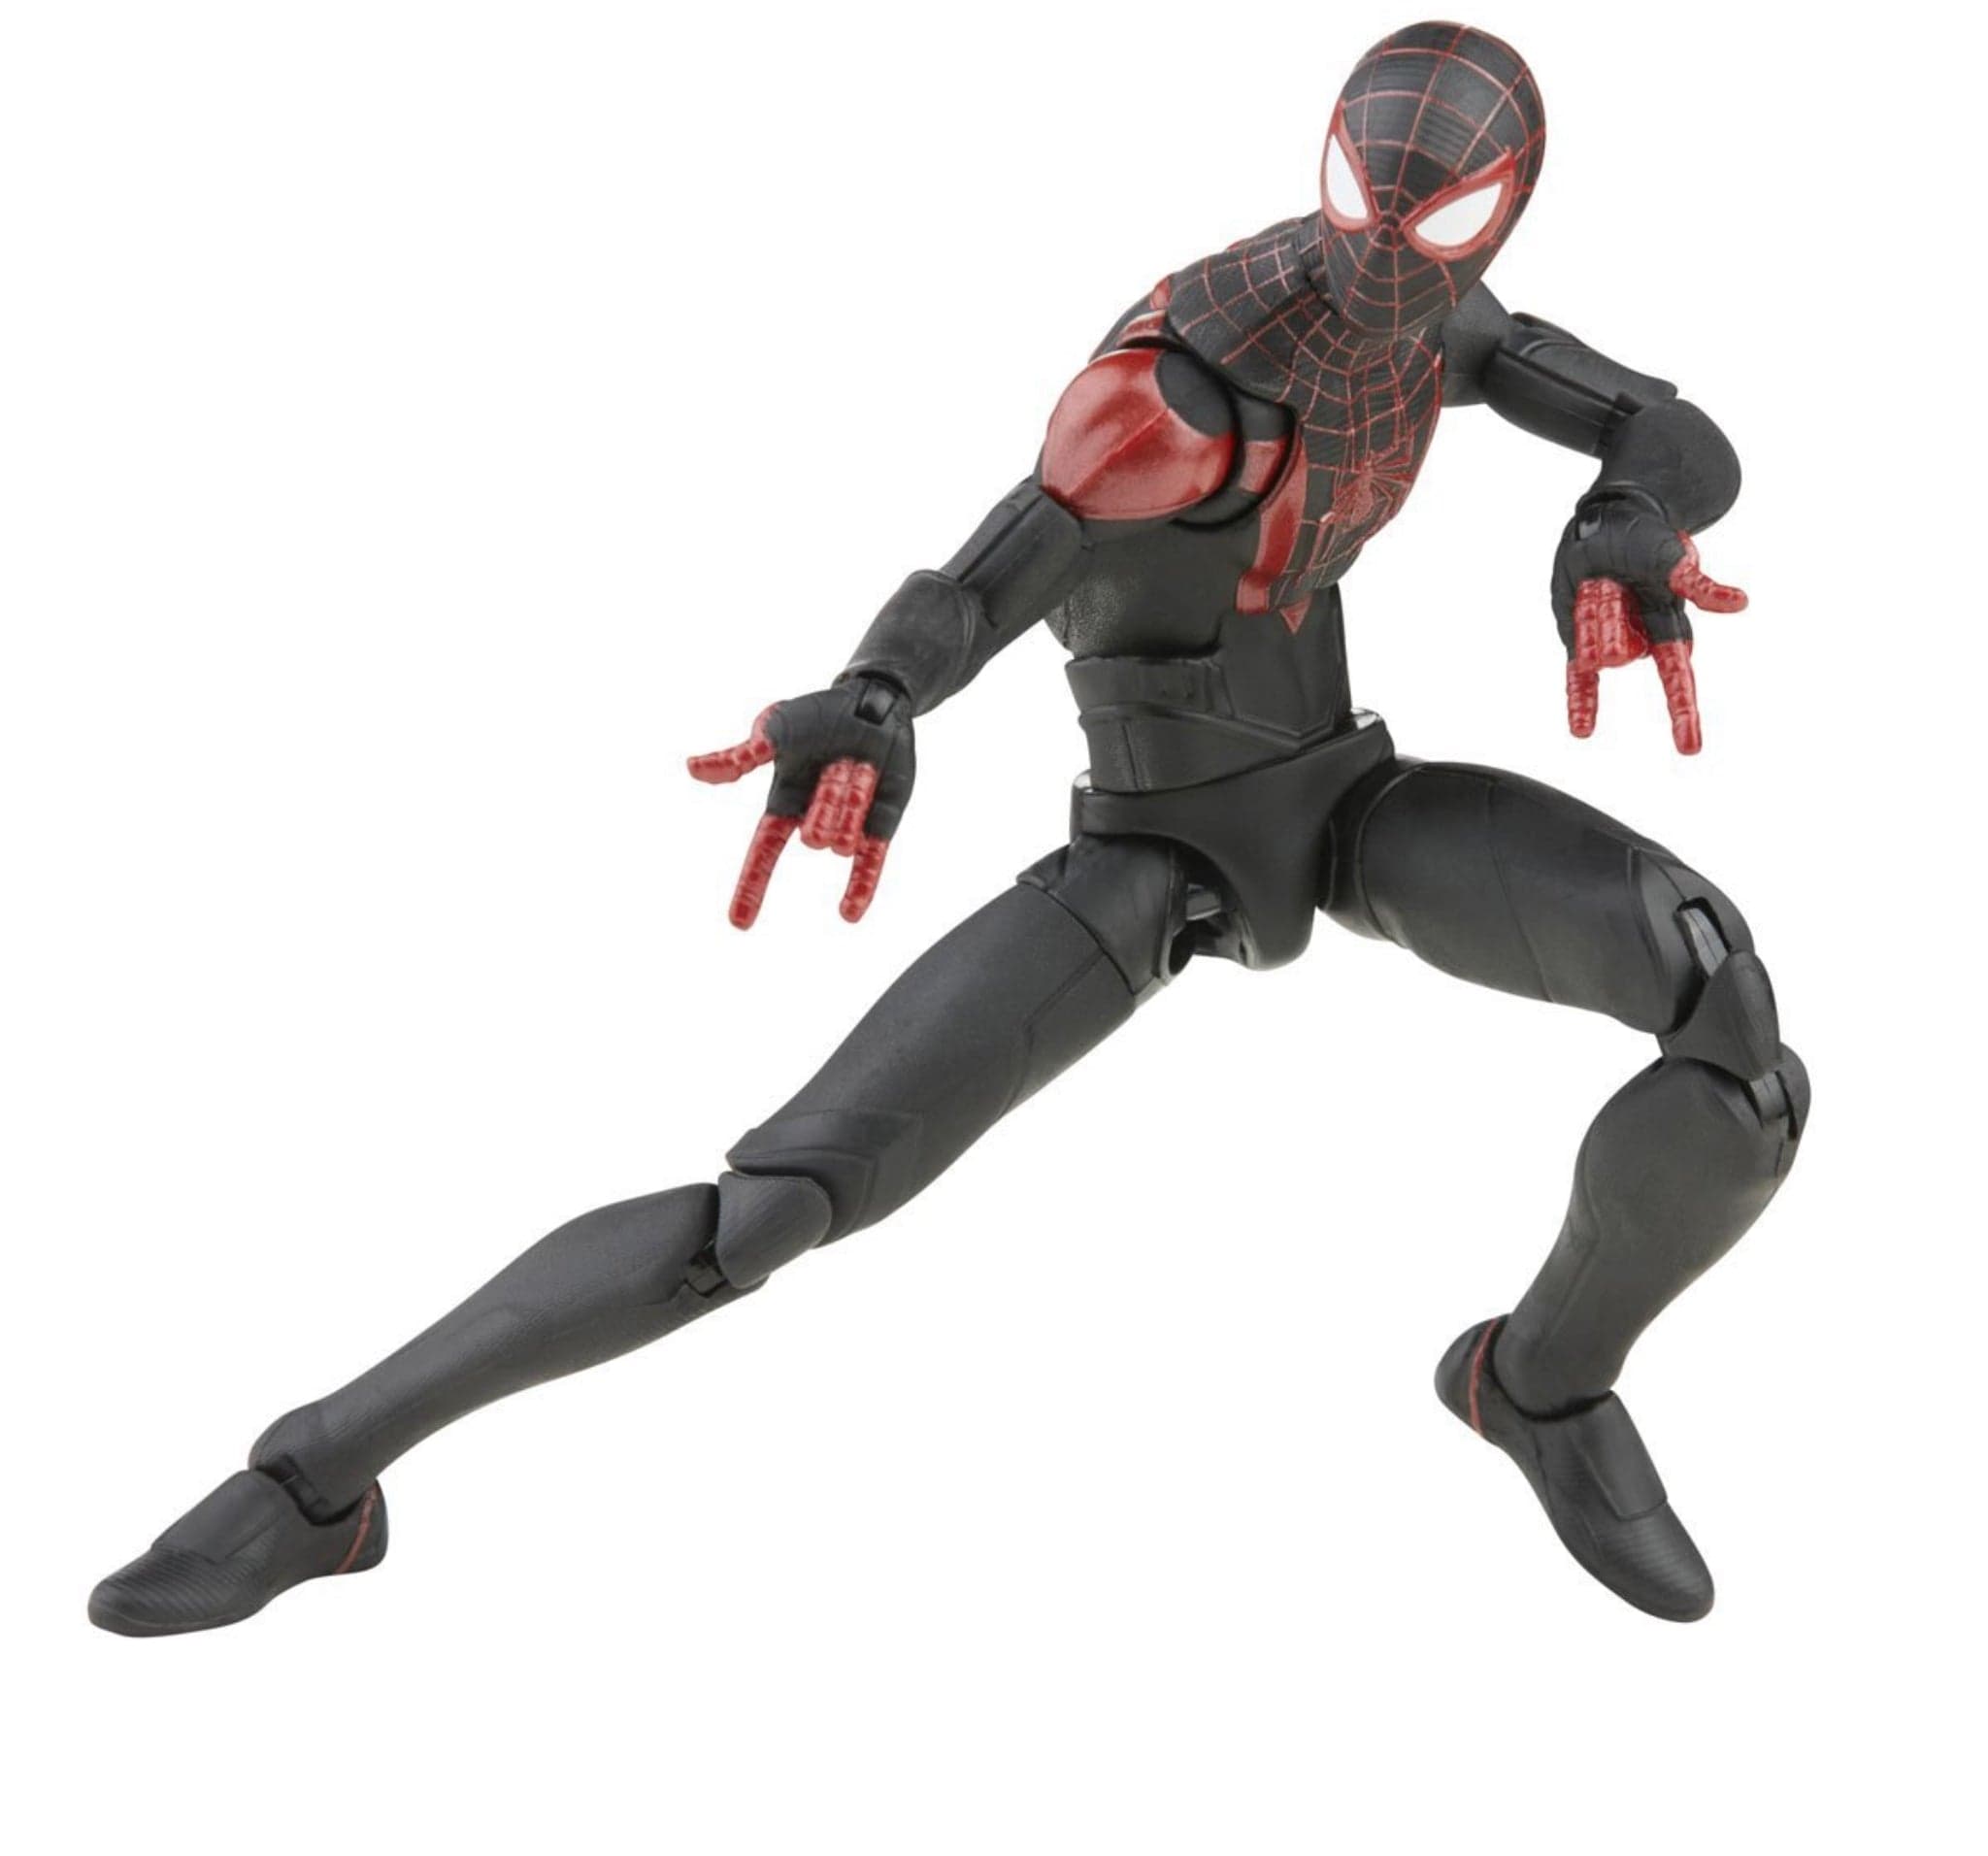 Spider-Man 3 Marvel Legends Miles Morales 6-Inch Action Figure web shooter pose